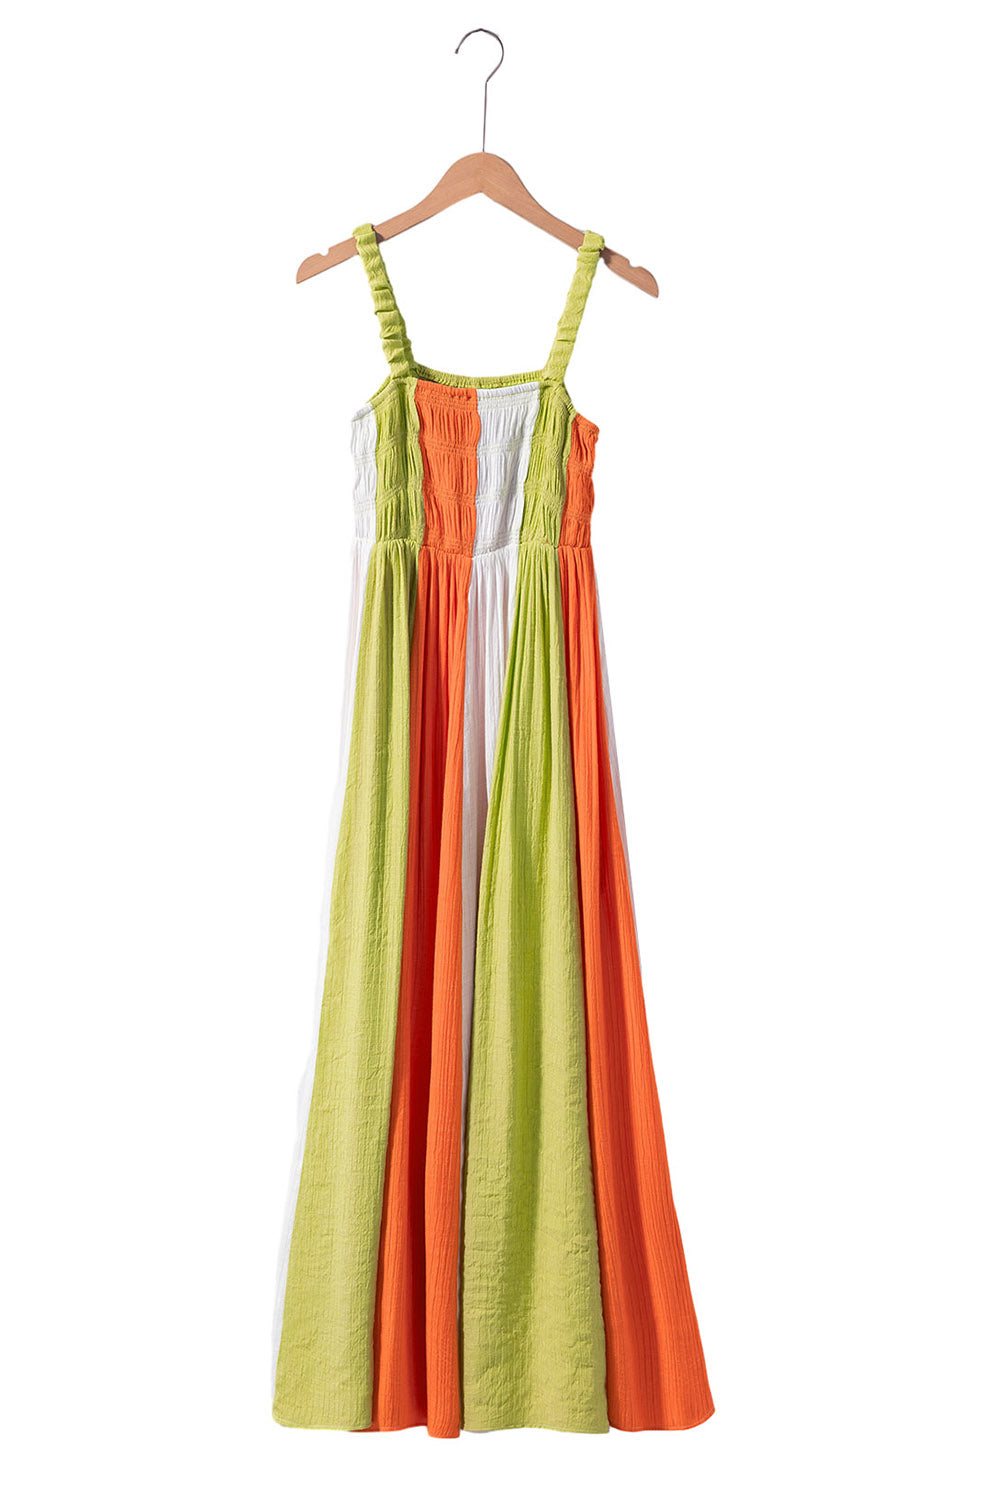 Blok zelene boje, široka haljina visokog struka i široke širine